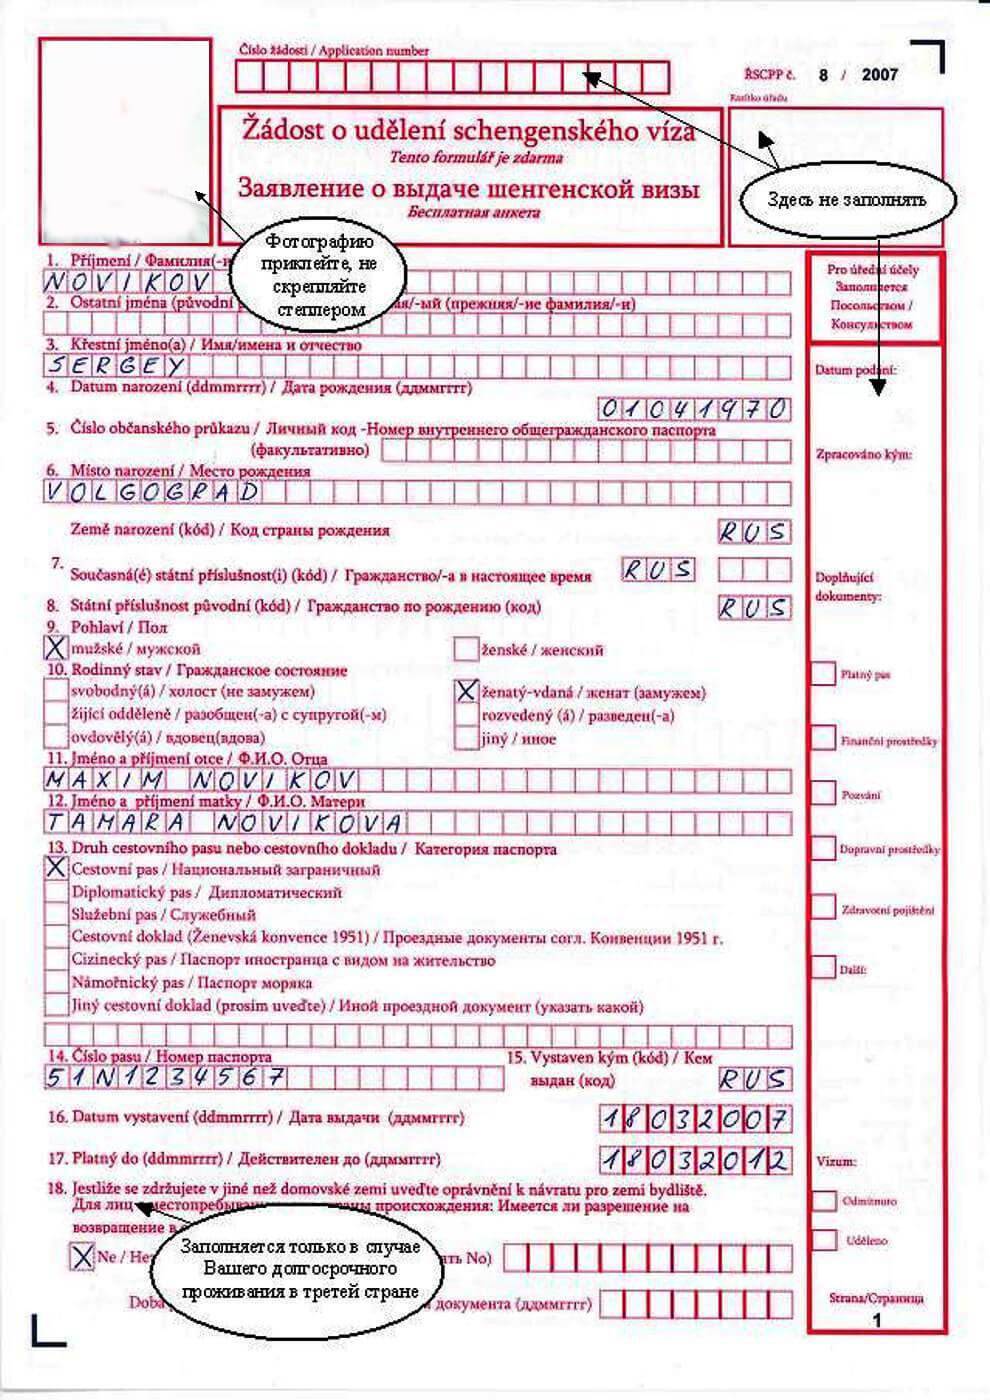 Календарь подачи документов на студенческую визу в чехию